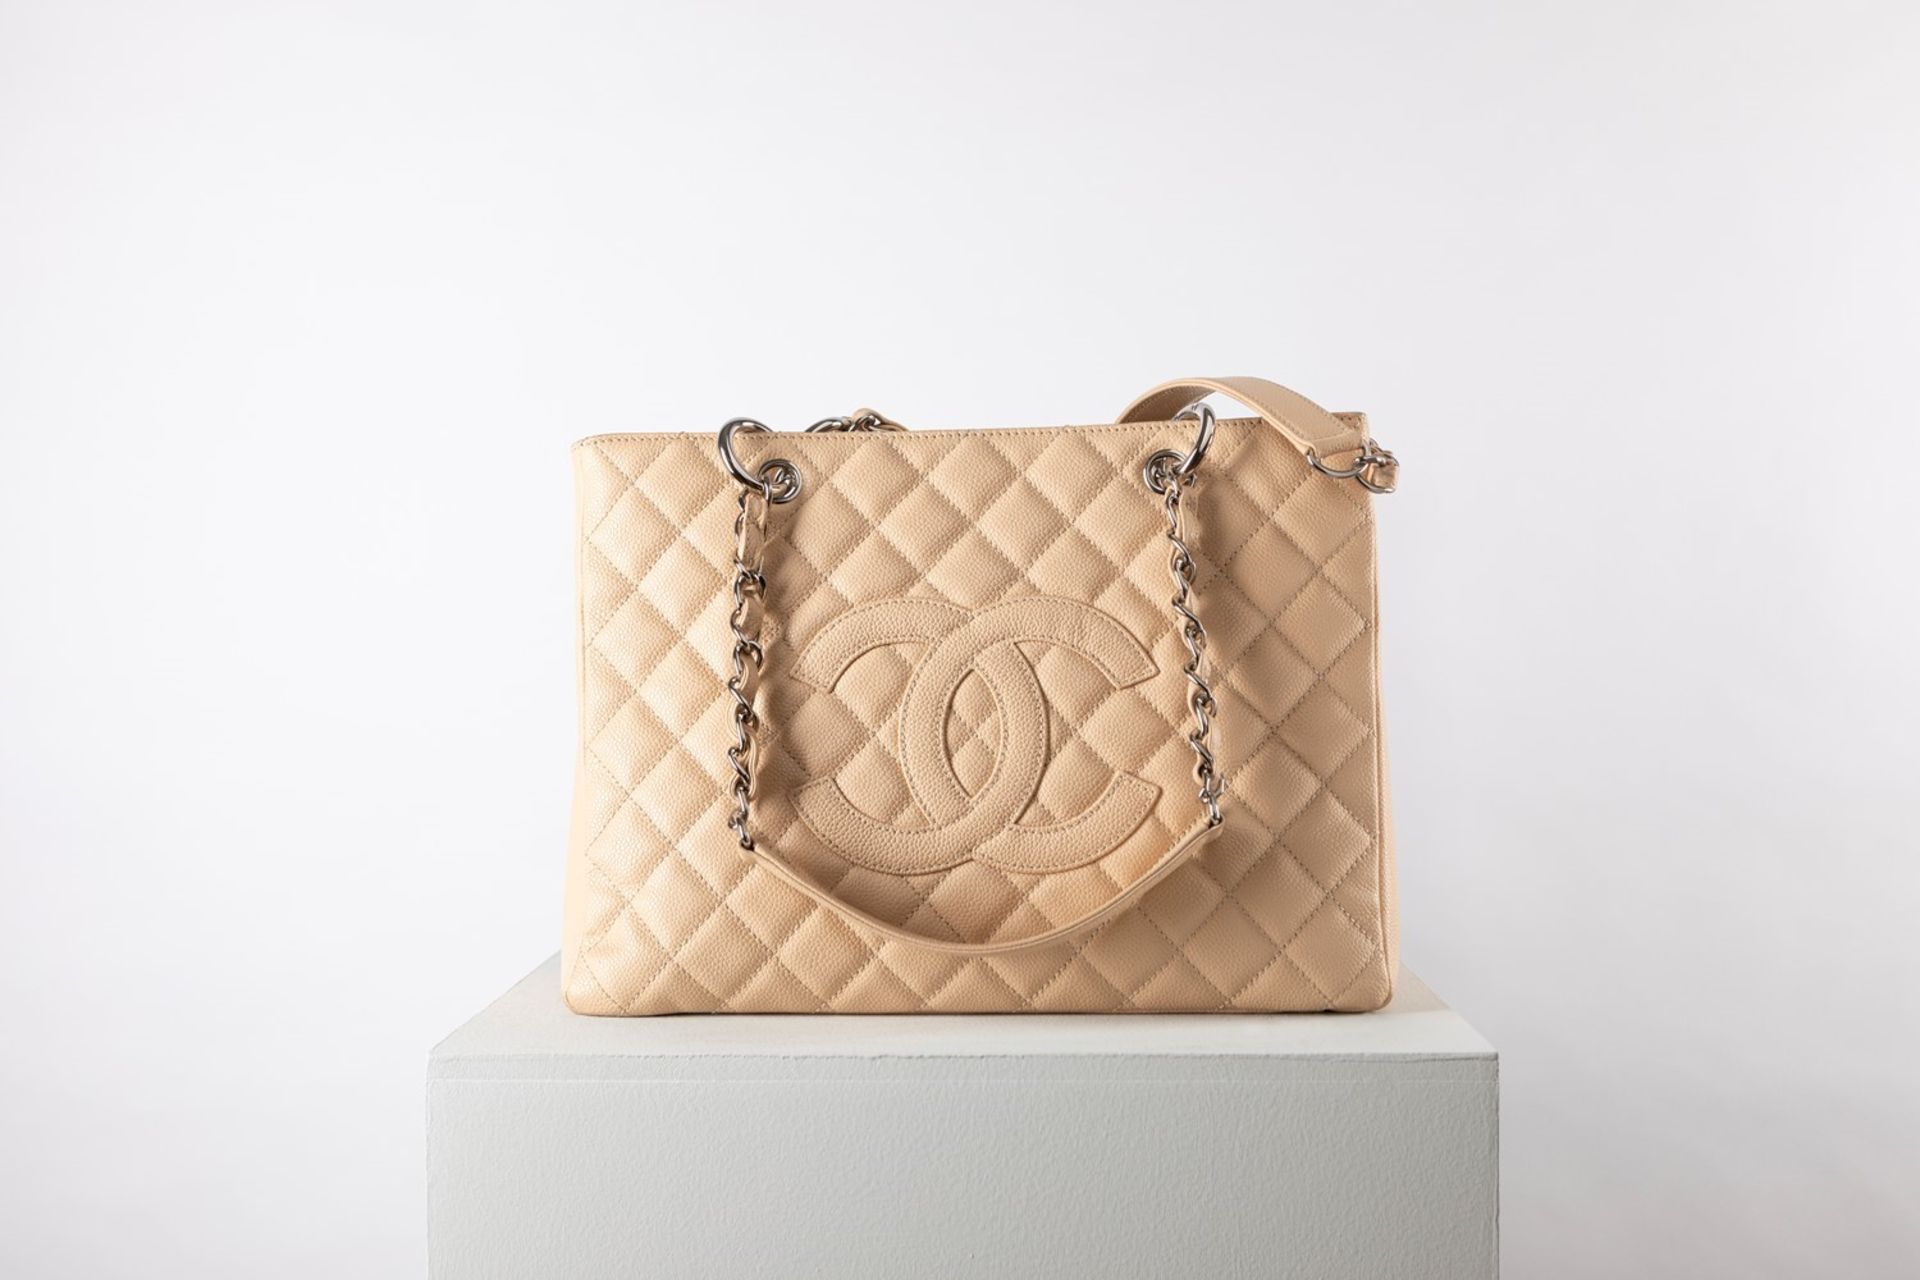 Chanel - Shopper Bag - Shopper Bag - Champagne colored quilted leather shoulder [...]